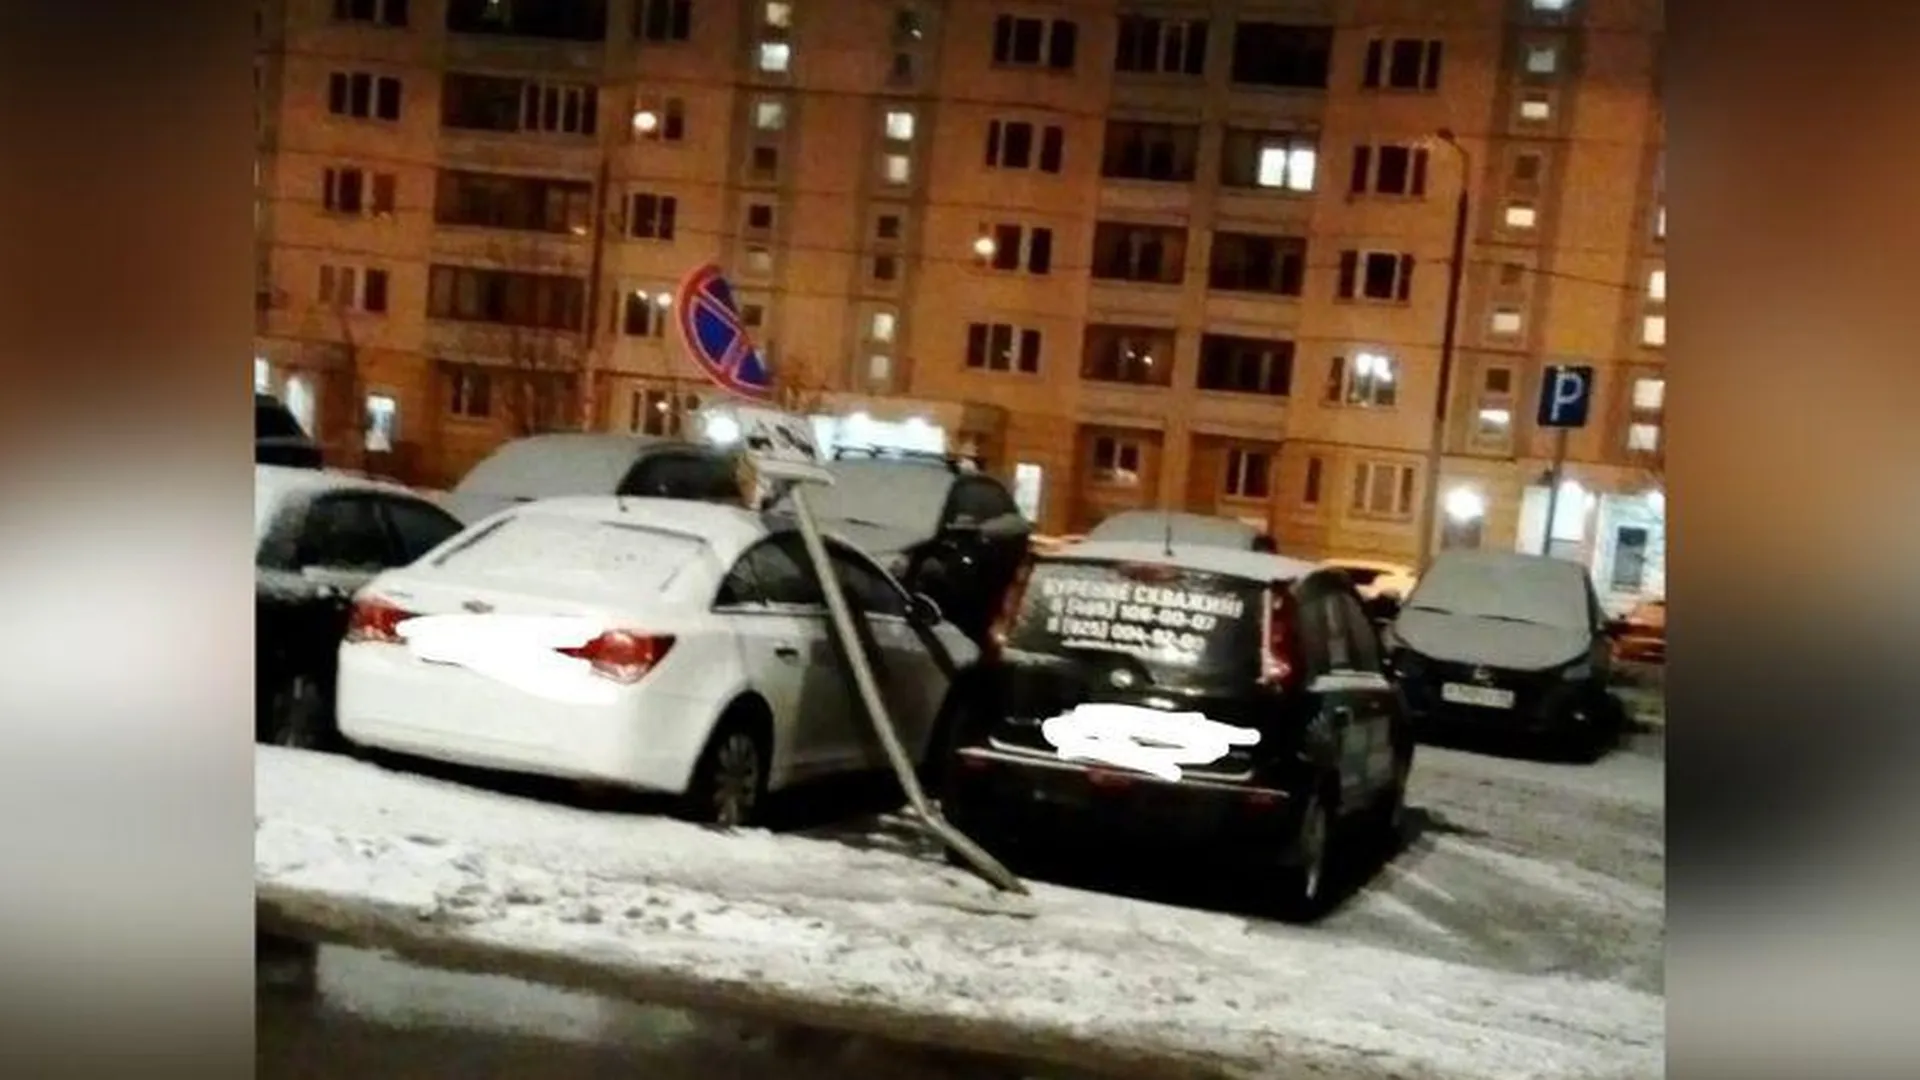 Автомобилиста, который сбил столб на припаркованные машины, разыскивают в Серпухове